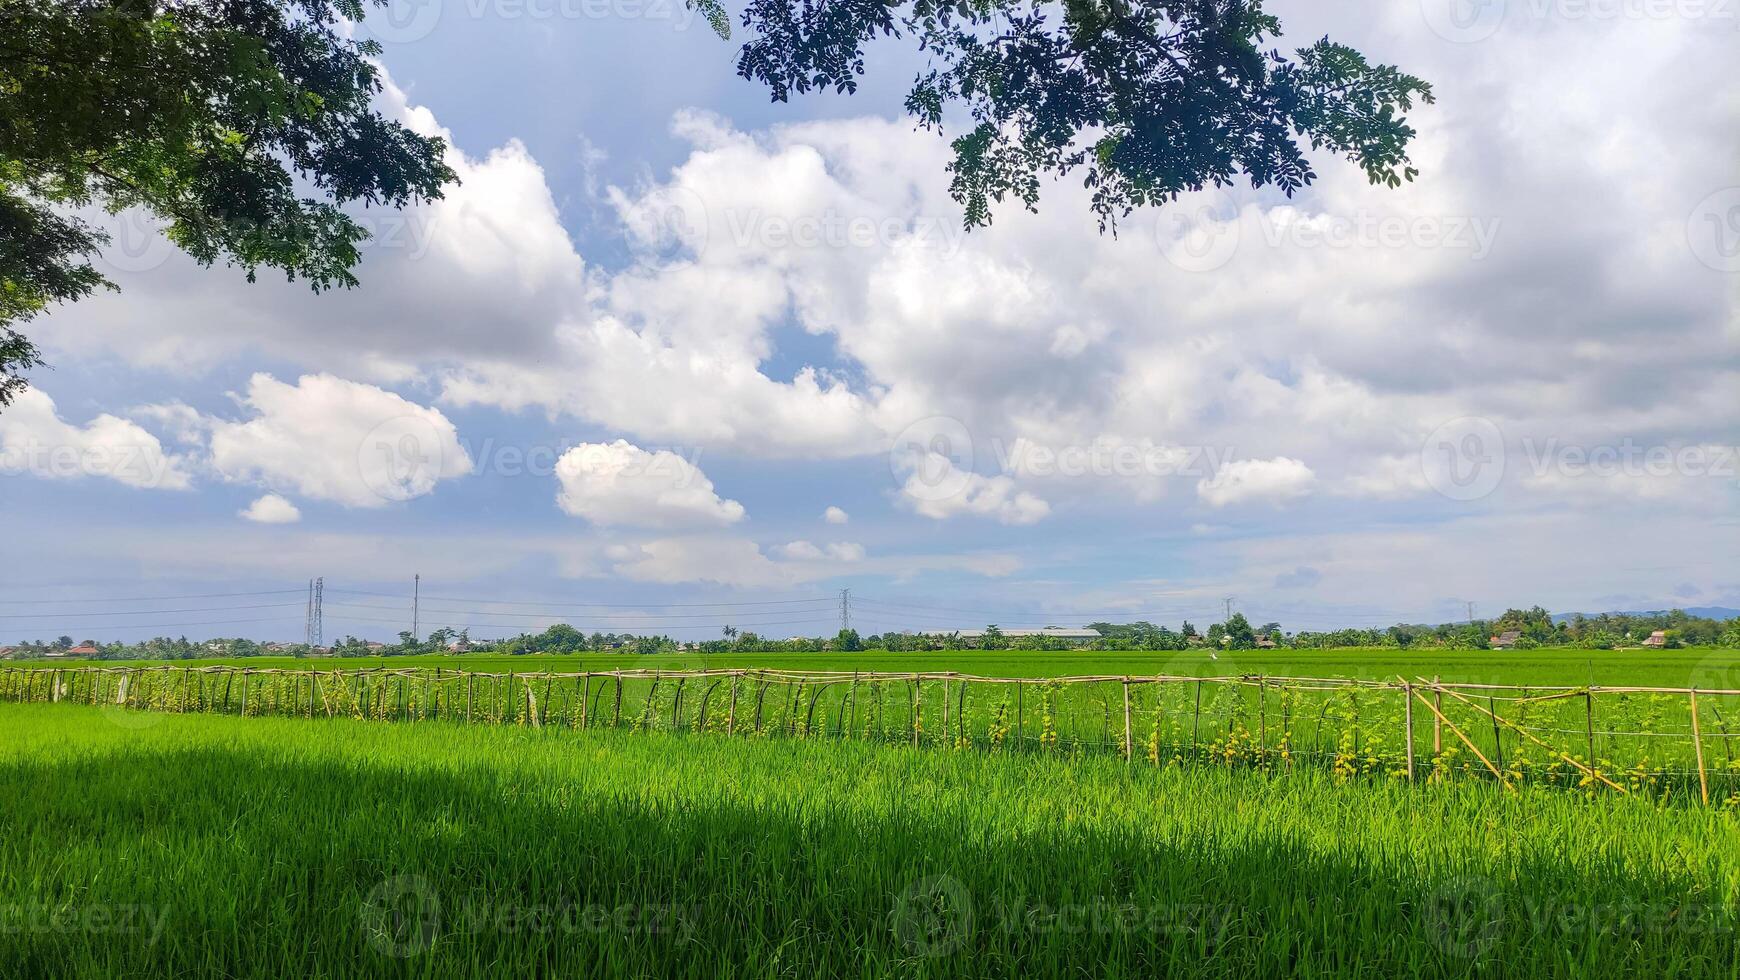 skön landskap av ris fält eller irländare fält med clouds och blå himmel foto